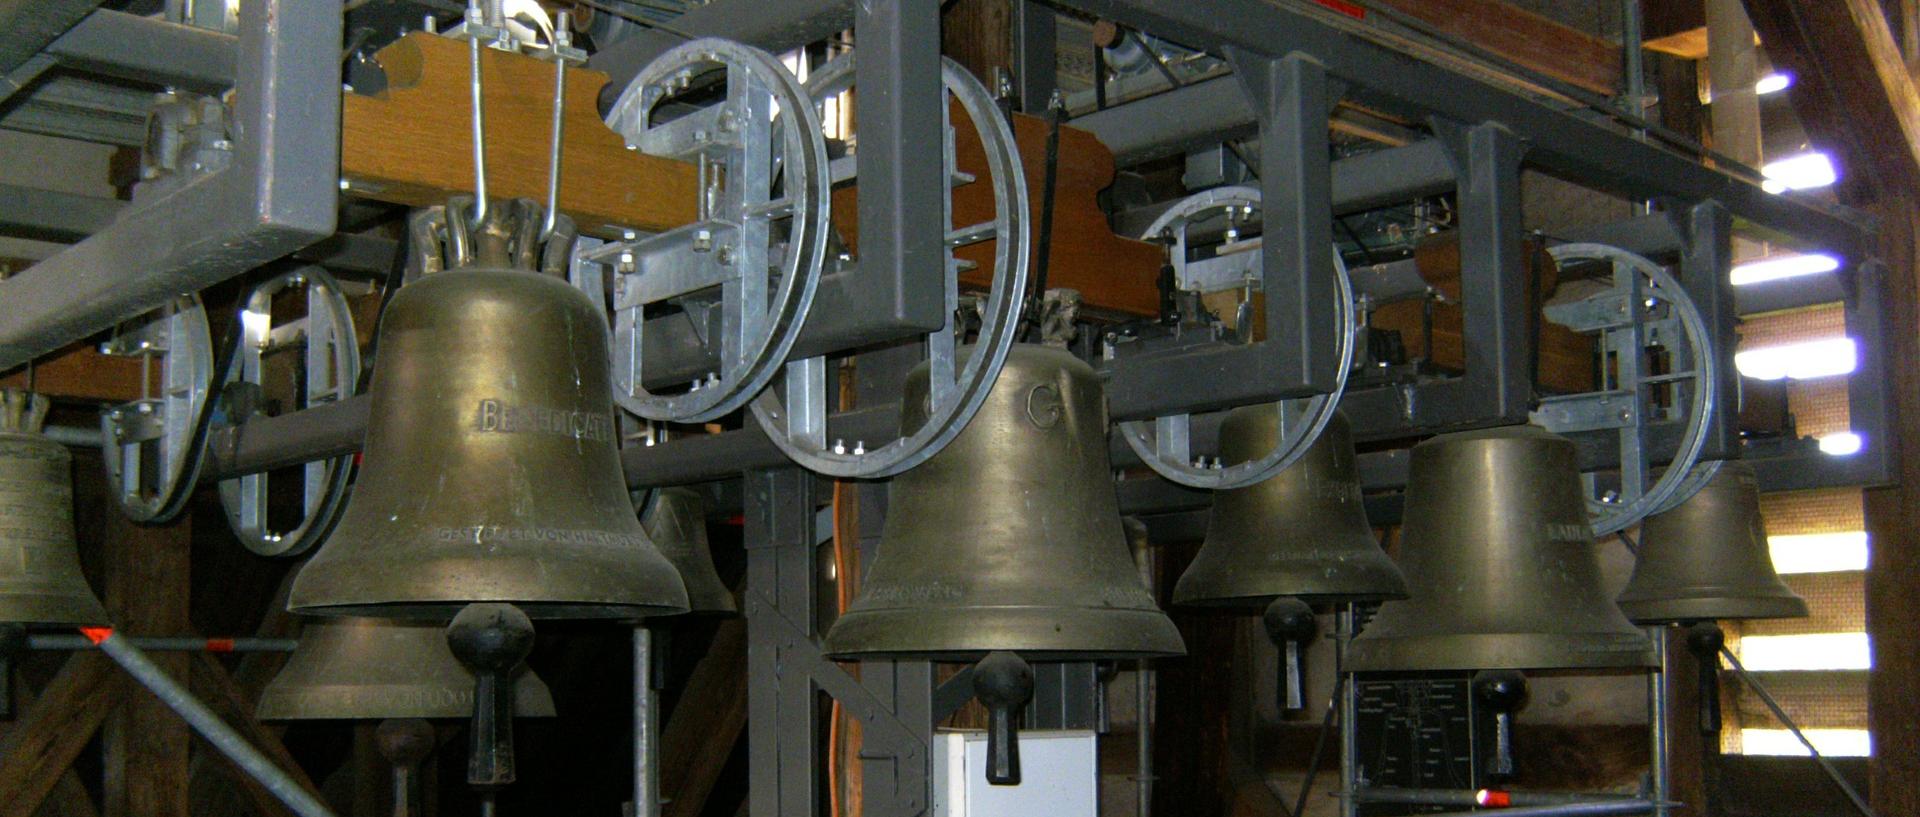 Glocken (c) www.pixabay.com